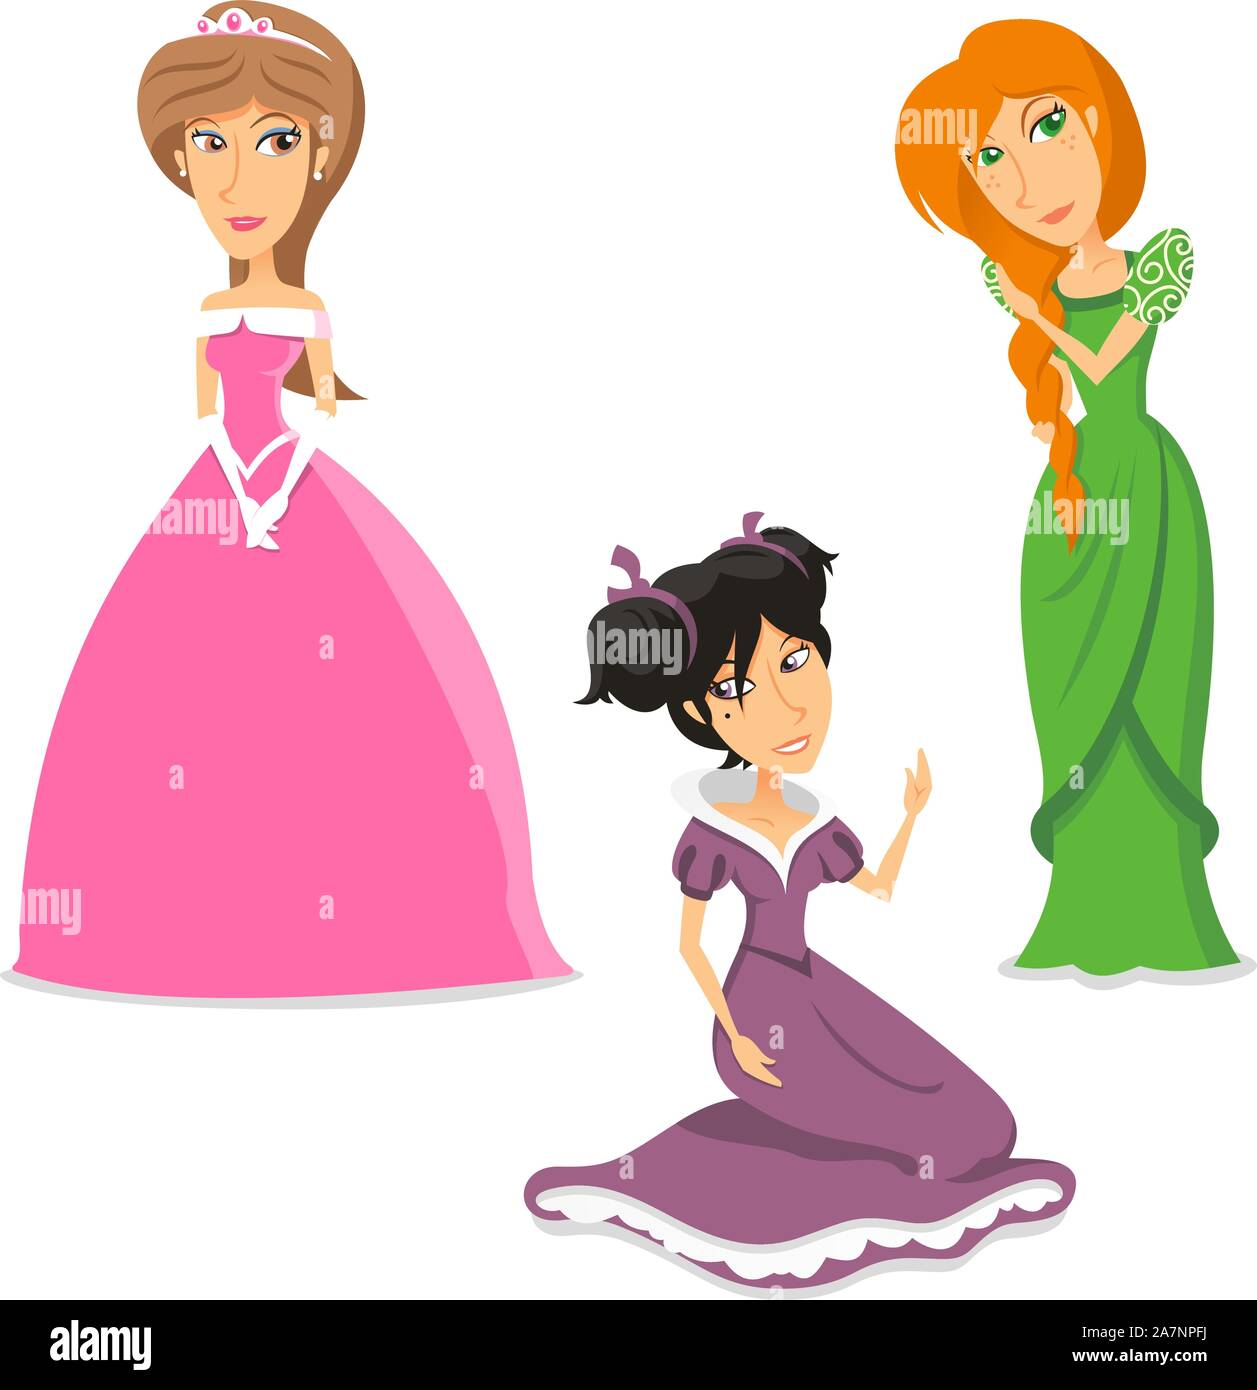 Prinzessin Königin Sammlung, mit drei ständigen Prinzessin, mit drei verschiedenen Kleider, mit verschiedenen Farben und Formen. Vector Illustration Cartoon. Stock Vektor